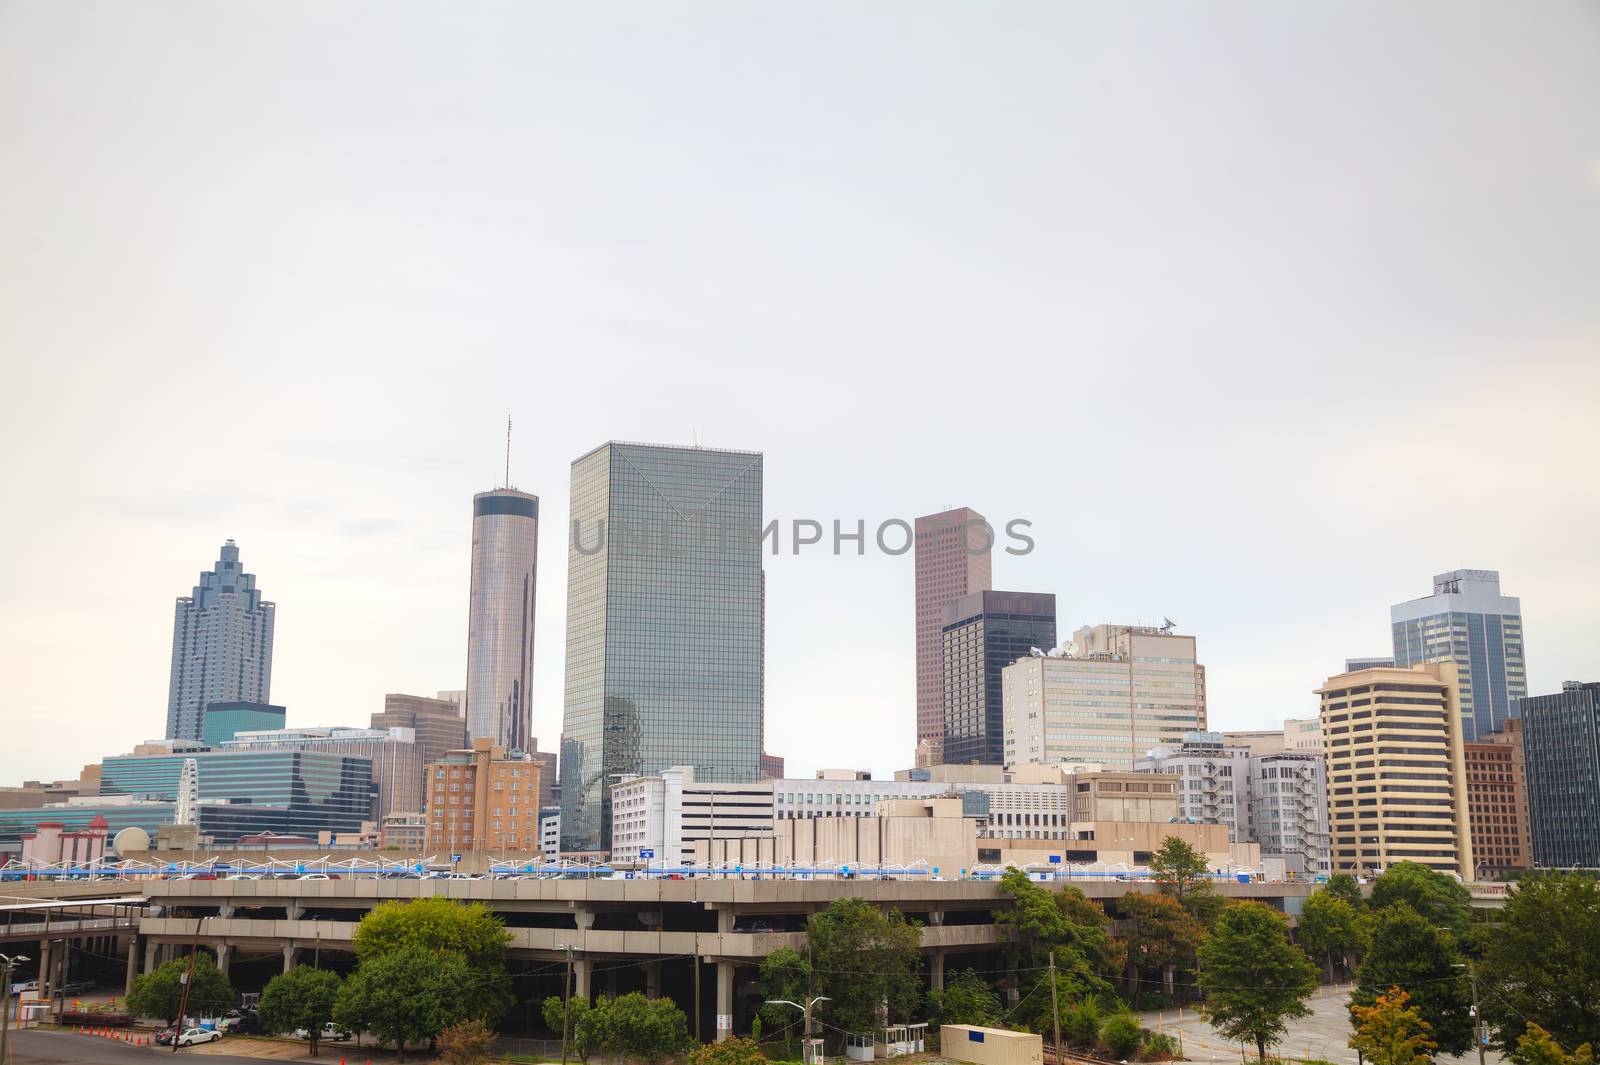 Downtown Atlanta, Georgia on a cloudy day